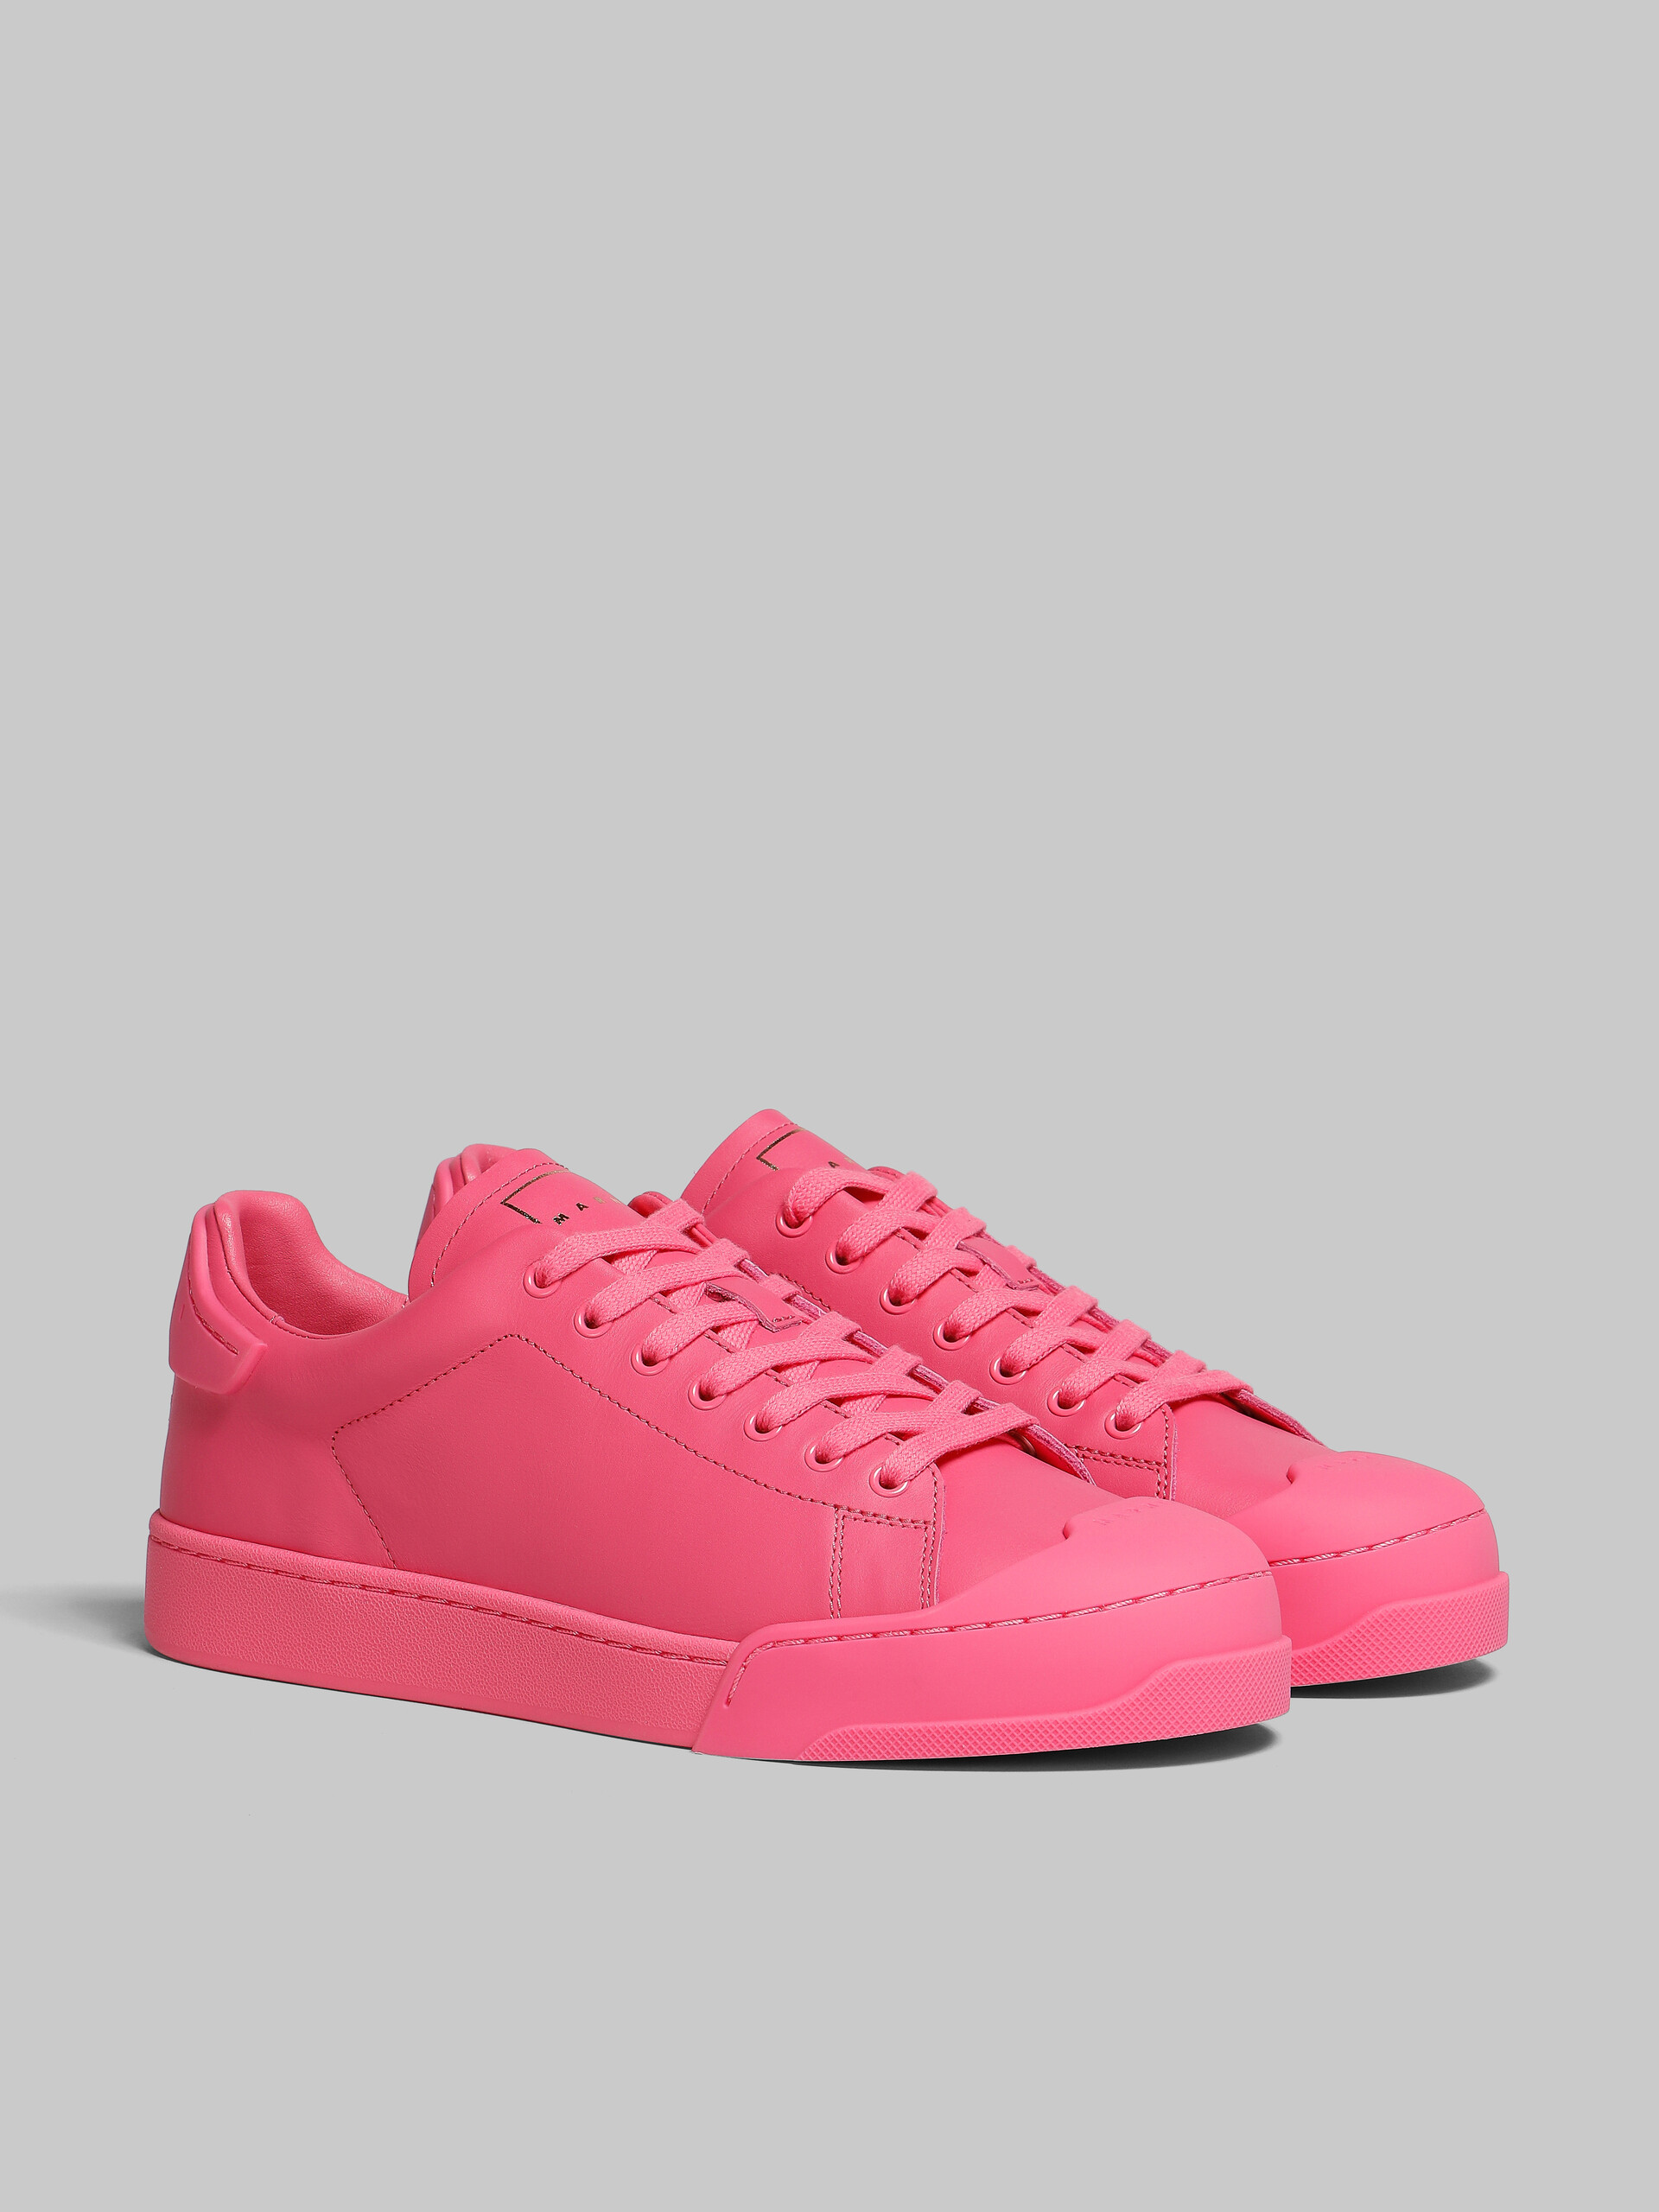 Pinkfarbene Sneakers Dada Bumper aus Leder - Sneakers - Image 2